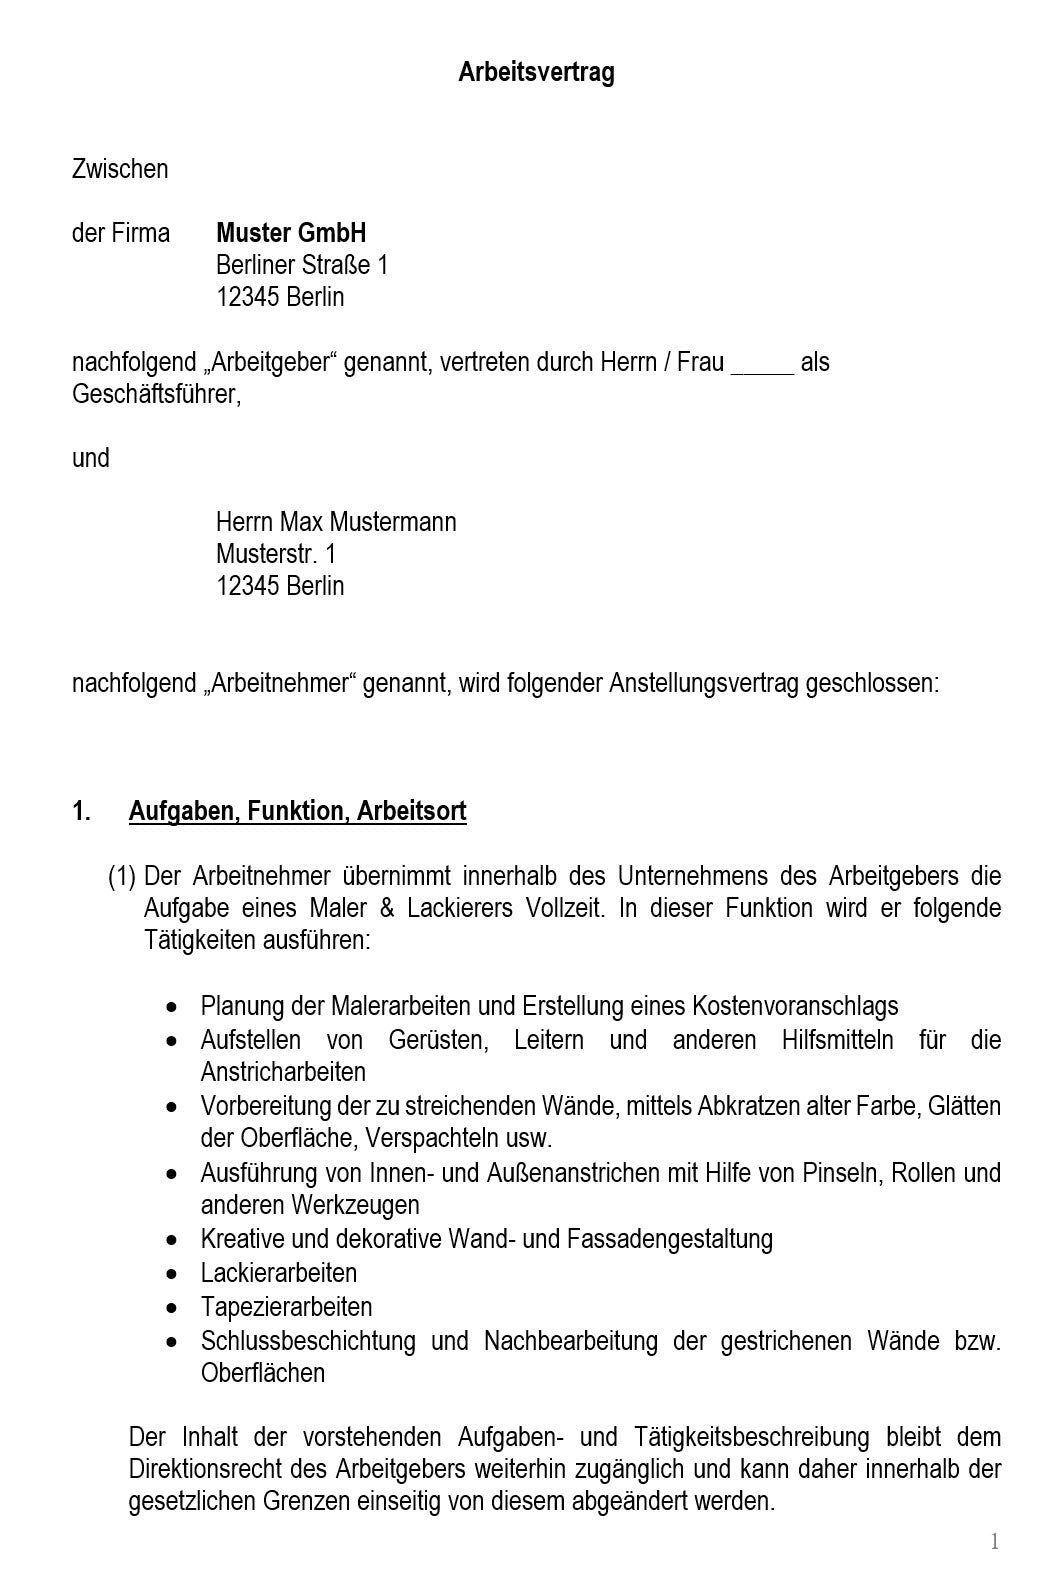 Arbeitsvertrag Maler & Lackierer Vorlage m/w/d - Simply Download